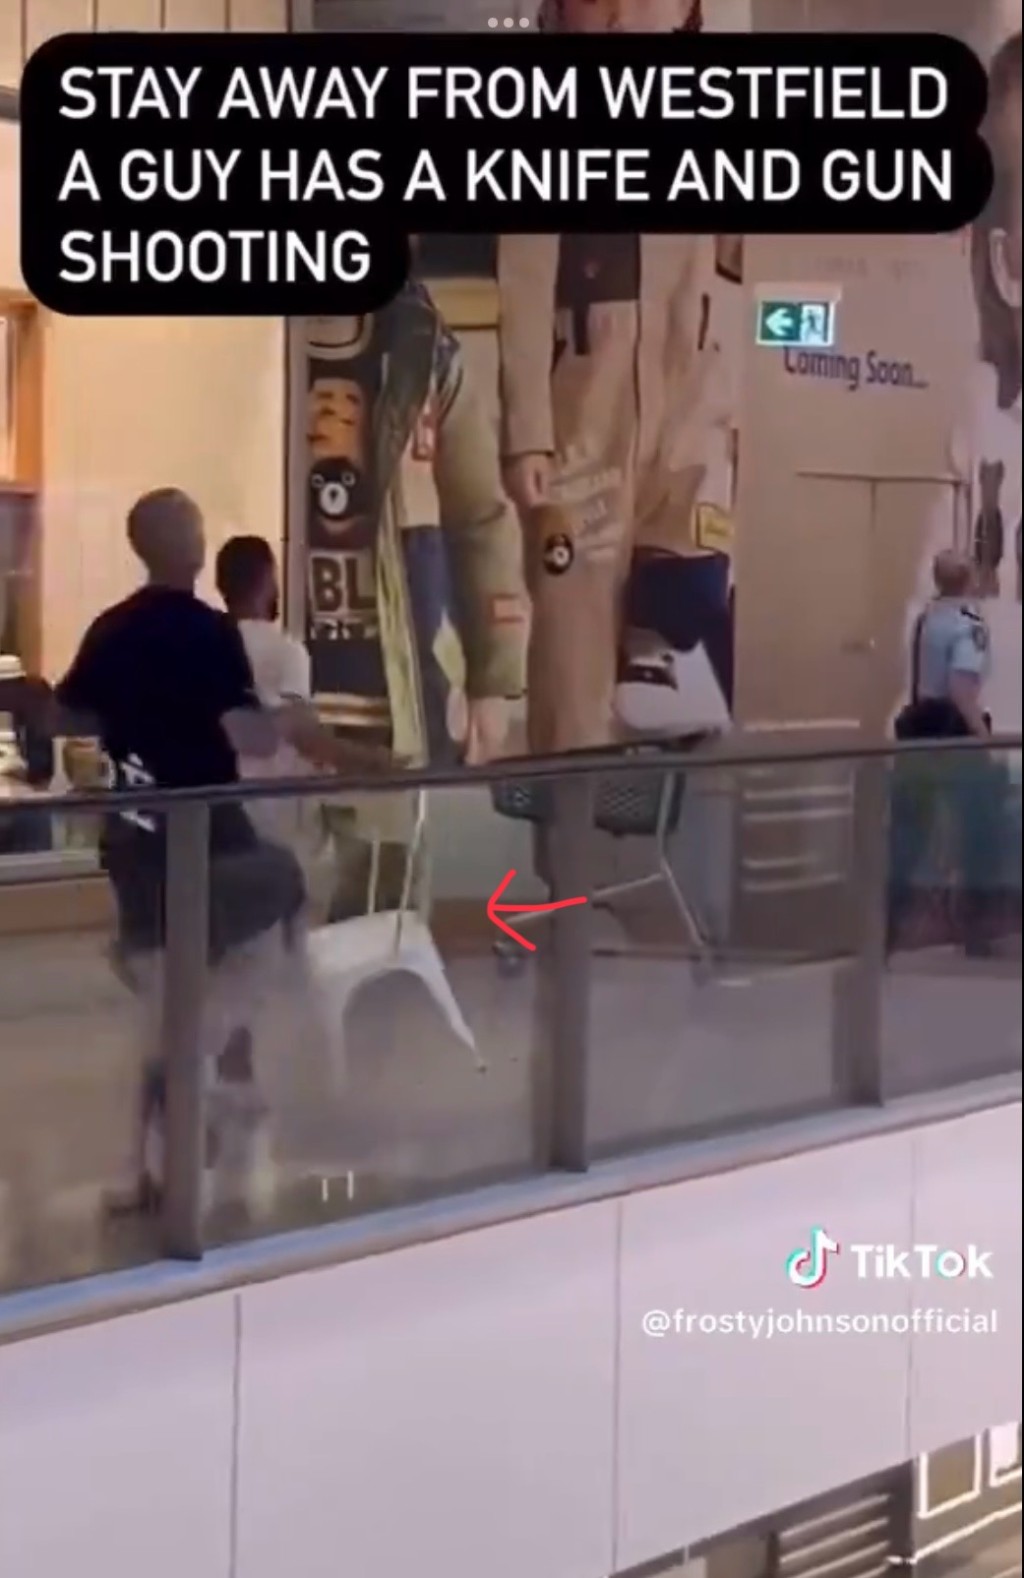 另一影片顯示有人拿着椅子奔向出事位置，未知是否準備用來對付兇徒。